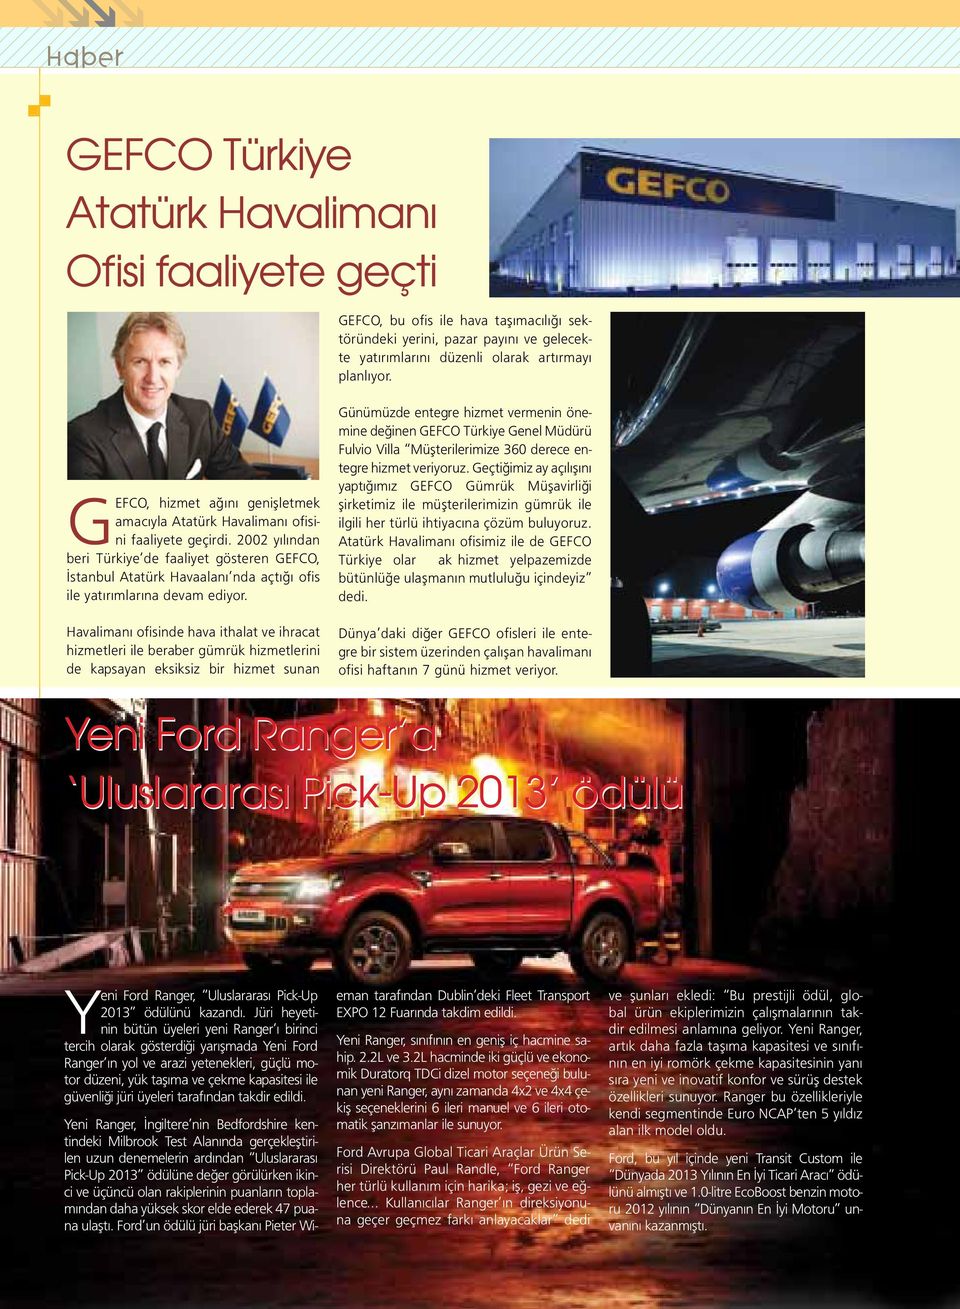 2002 yılından beri Türkiye de faaliyet gösteren GEFCO, İstanbul Atatürk Havaalanı nda açtığı ofis ile yatırımlarına devam ediyor.